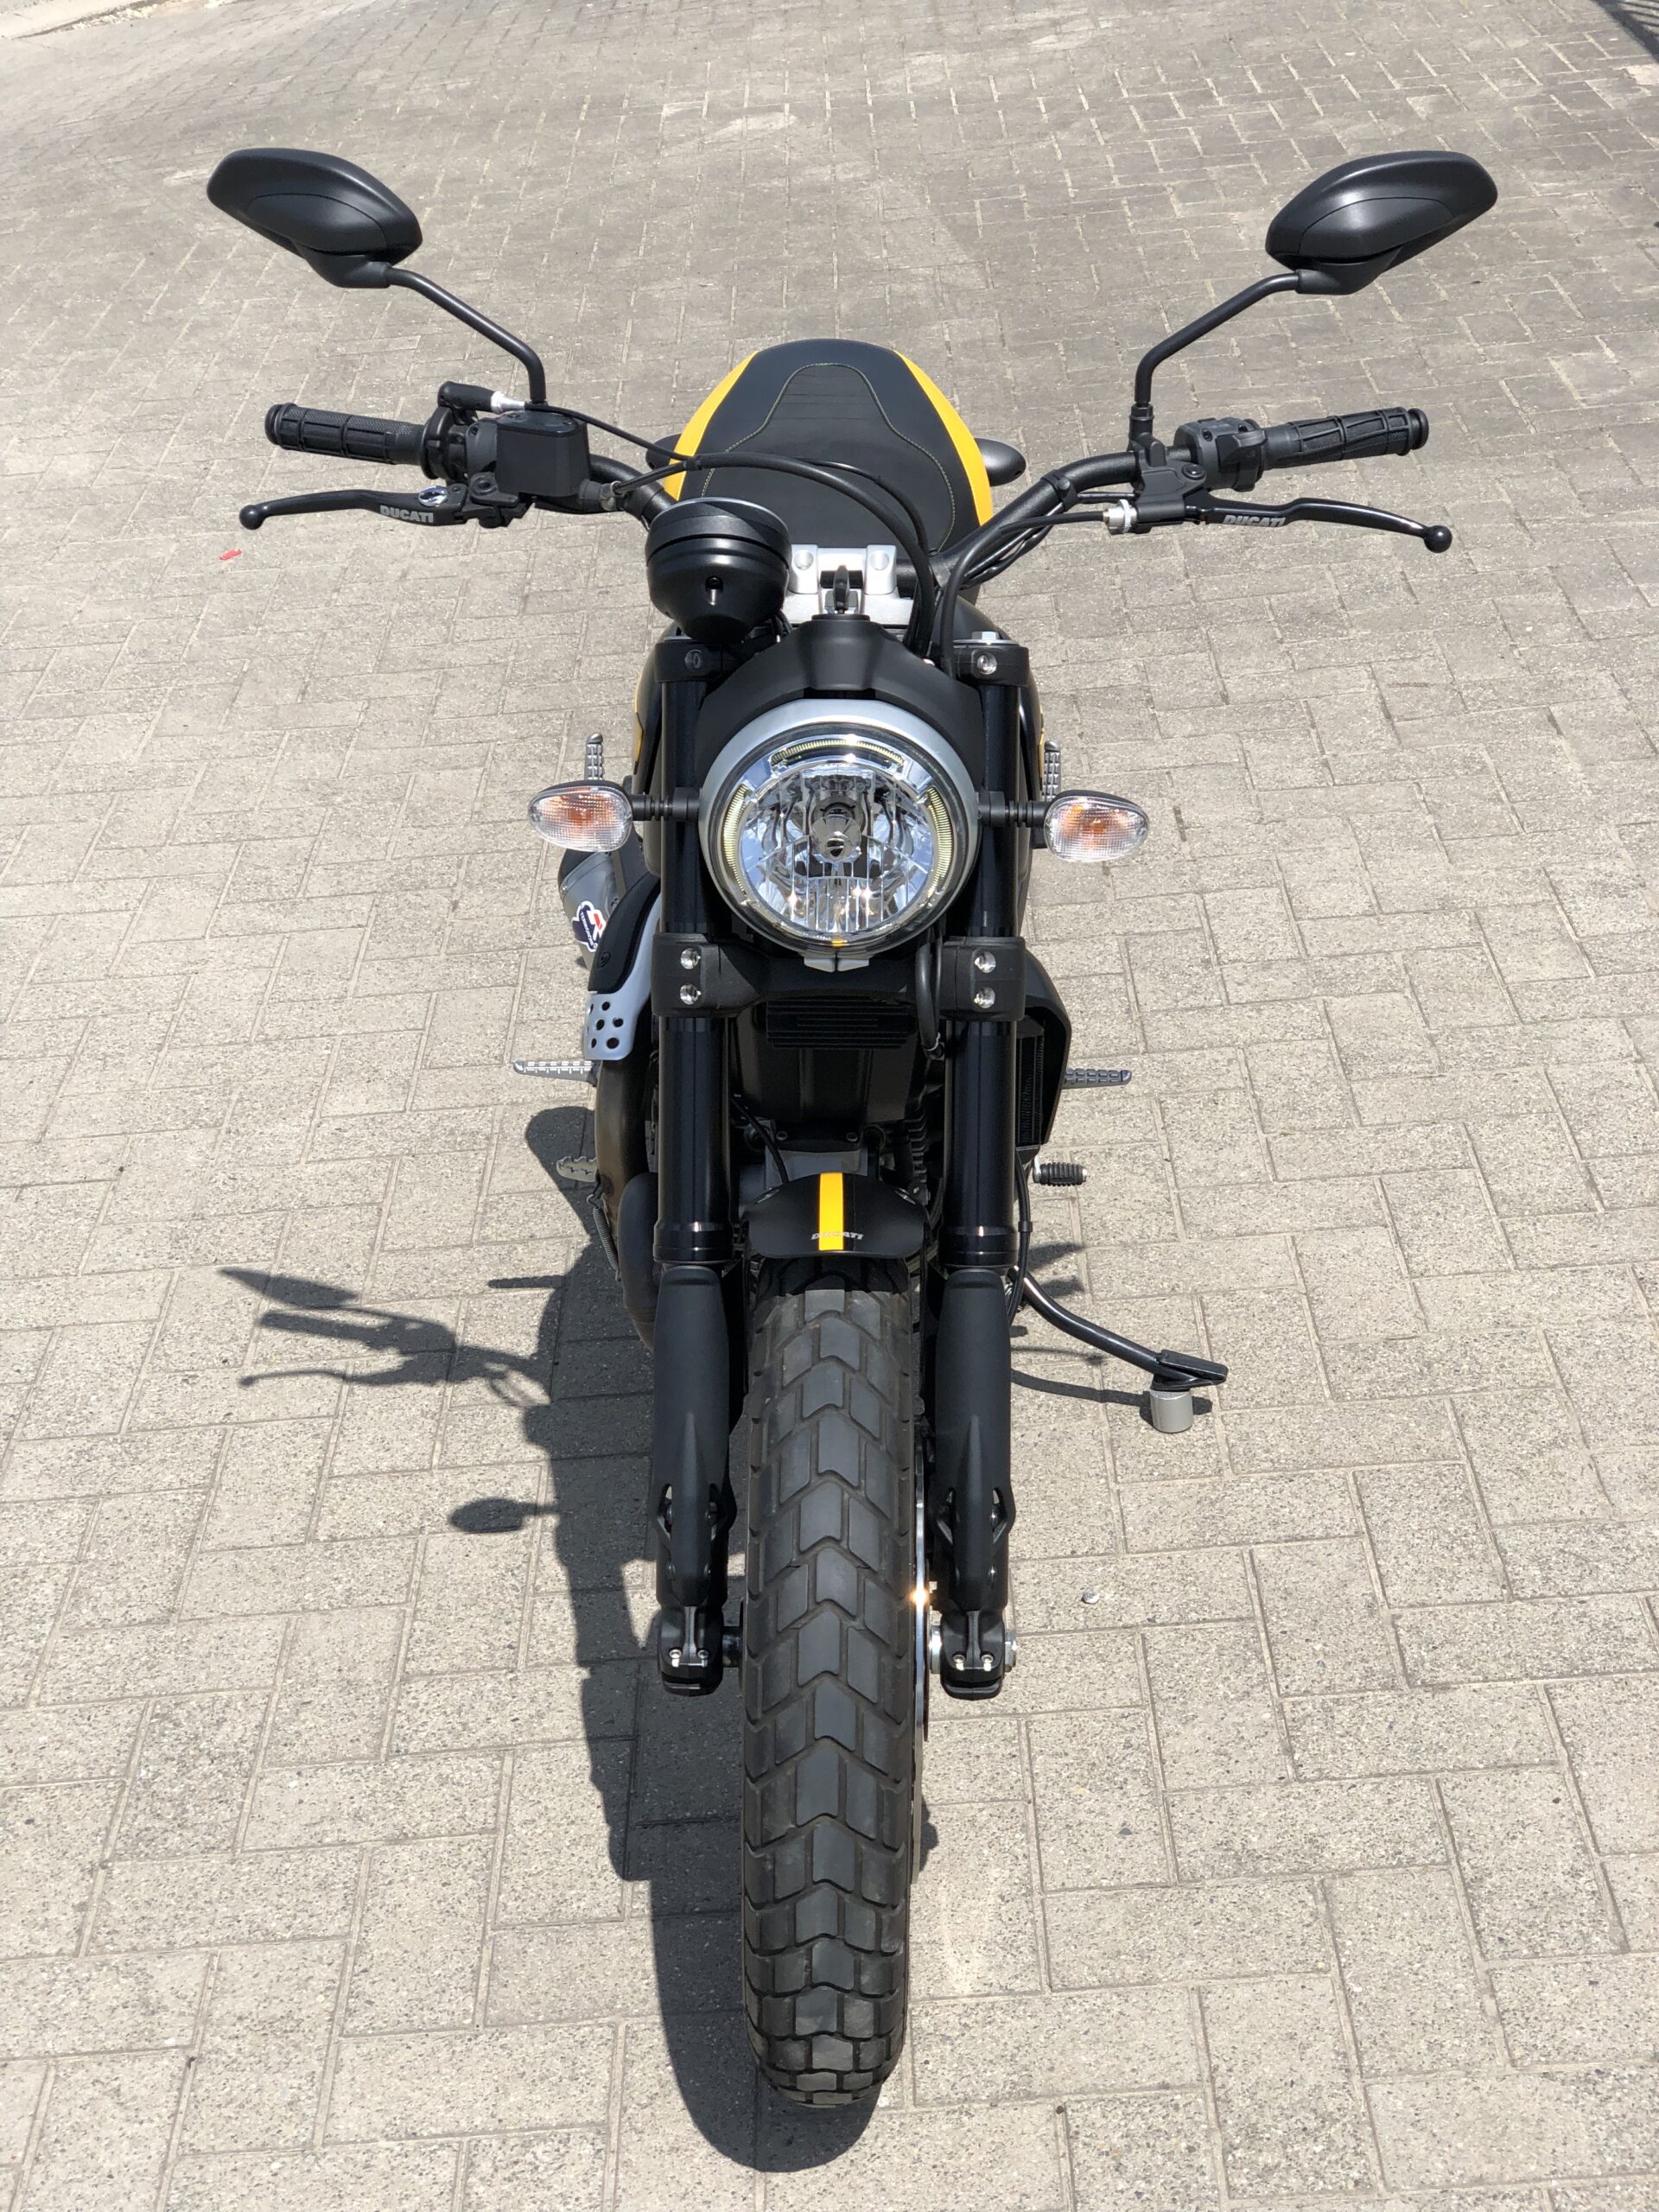 Ducati Scrambler 800 Full Trattle ABS 2878 Km Bouwjaar 2015